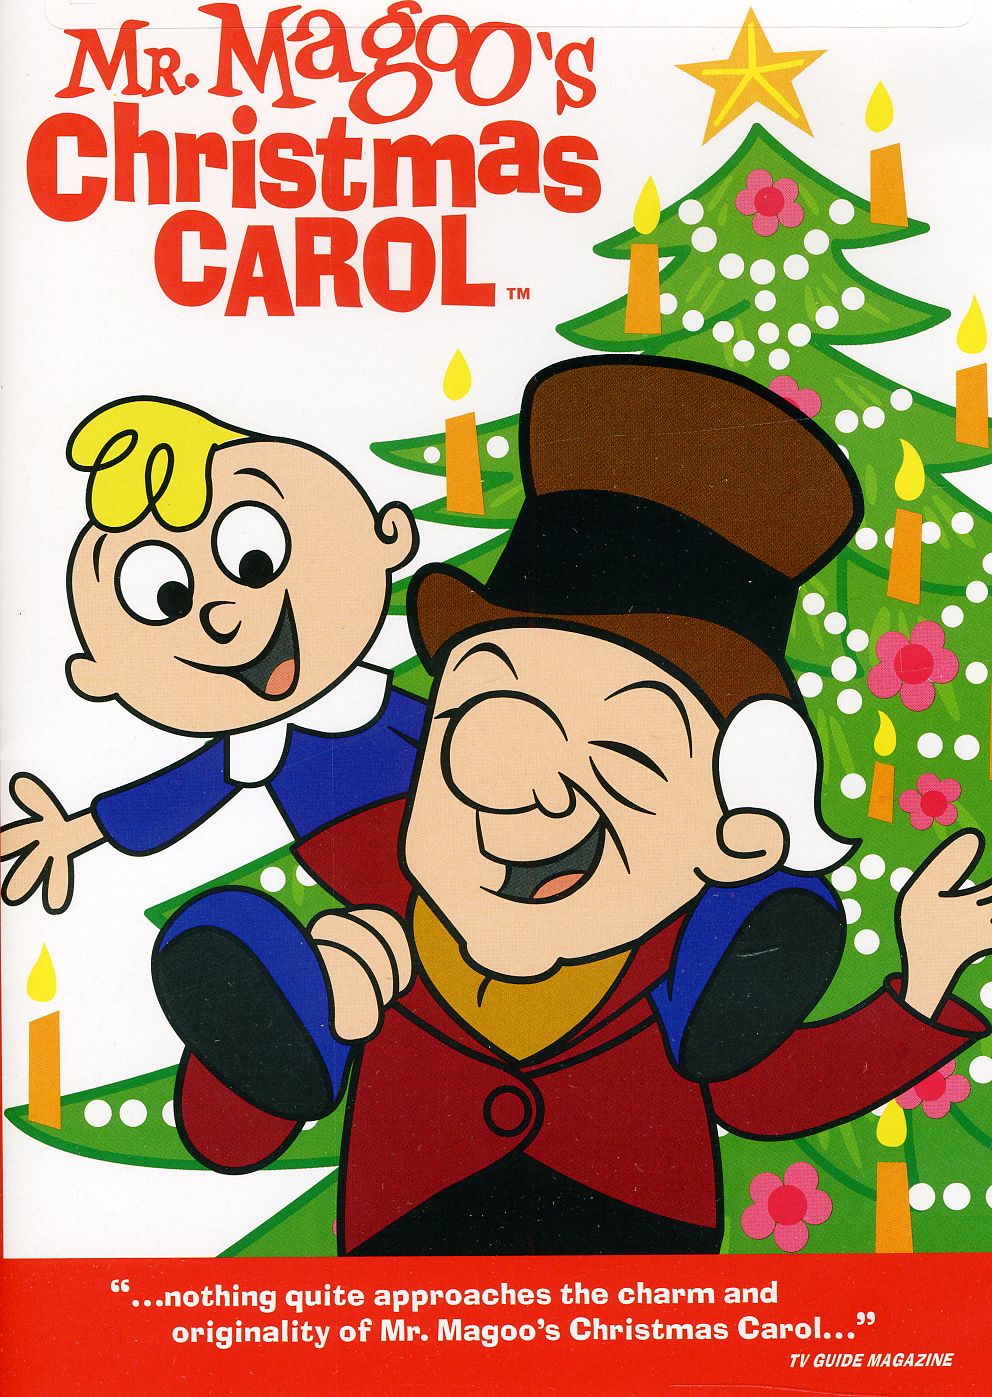 An Animated Broadway Musical for Christmas: “Mr. Magoo’s Christmas Carol”